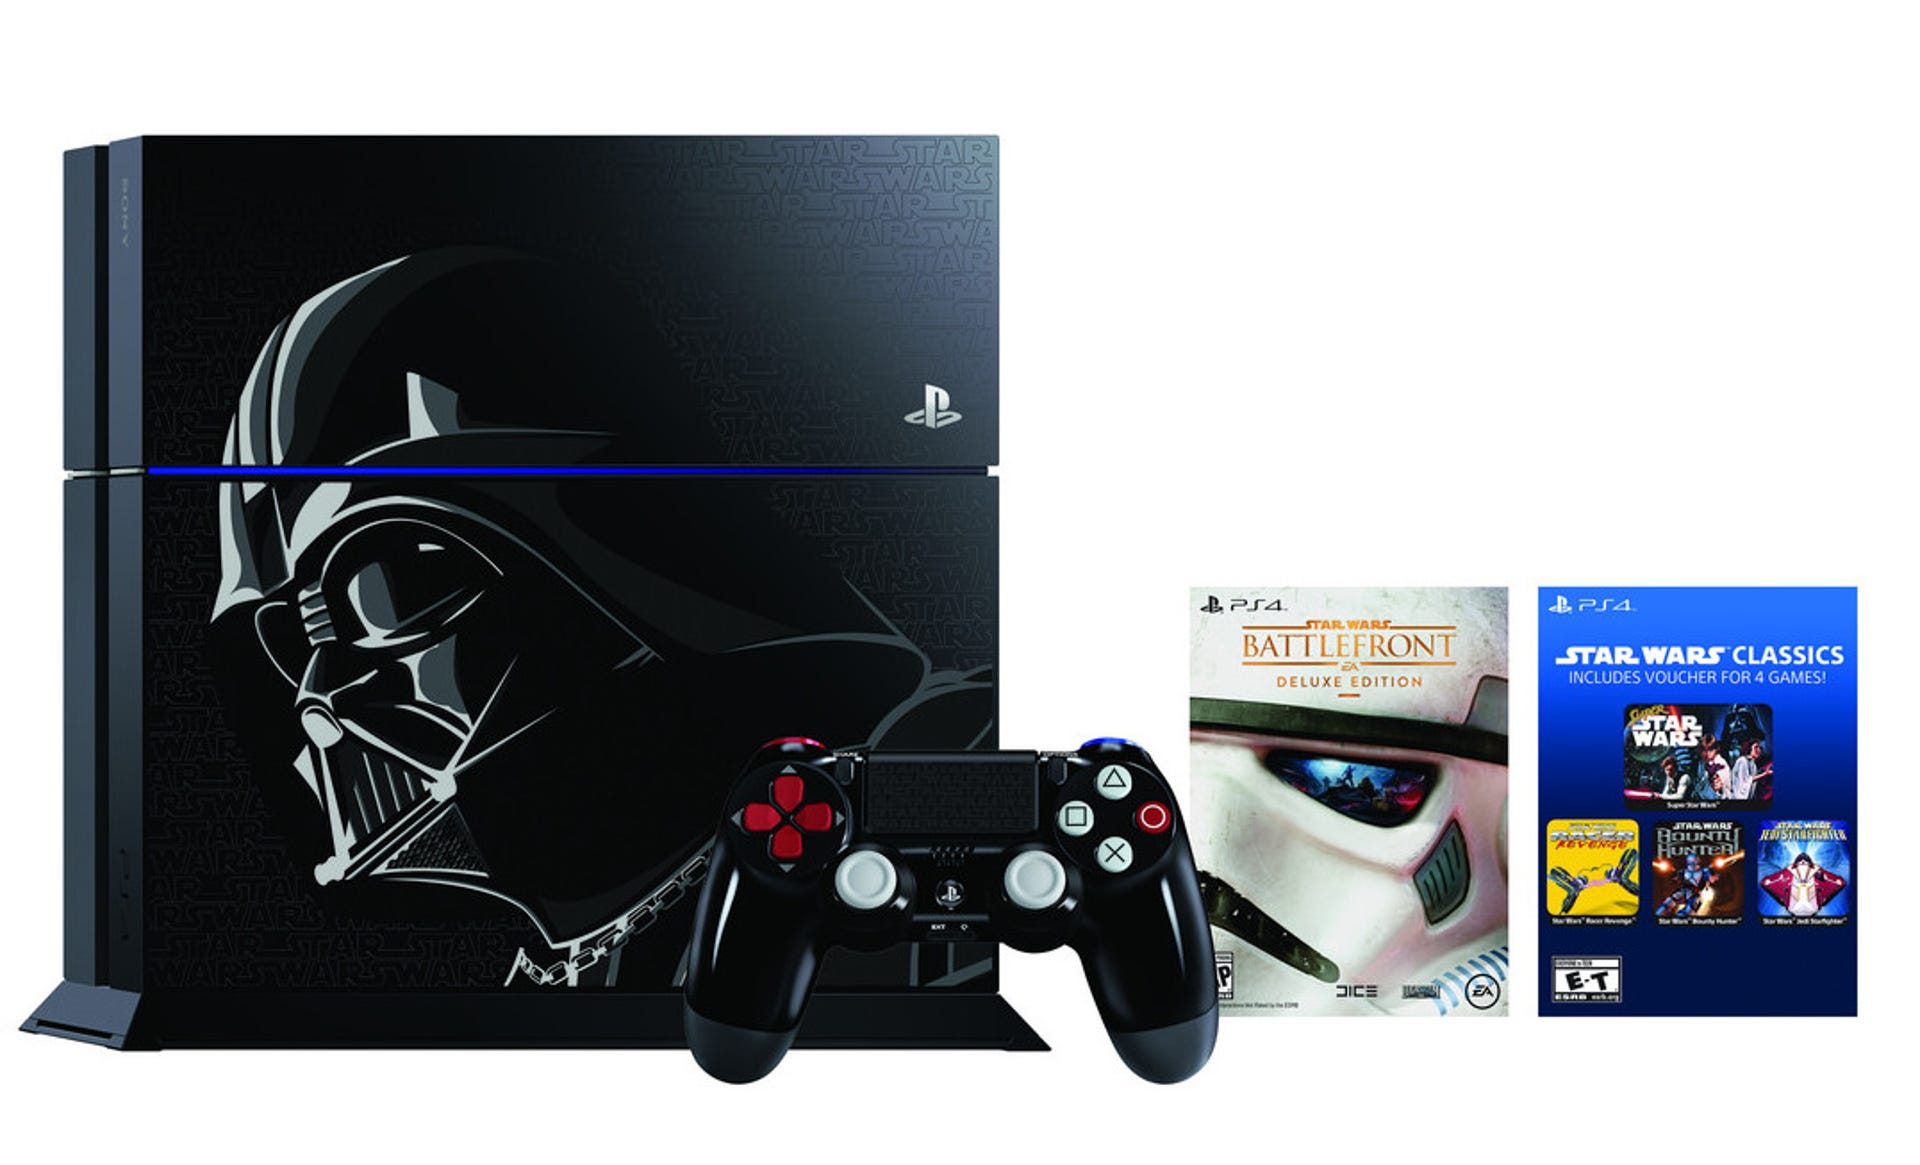 Darth Vader PS4 bundle